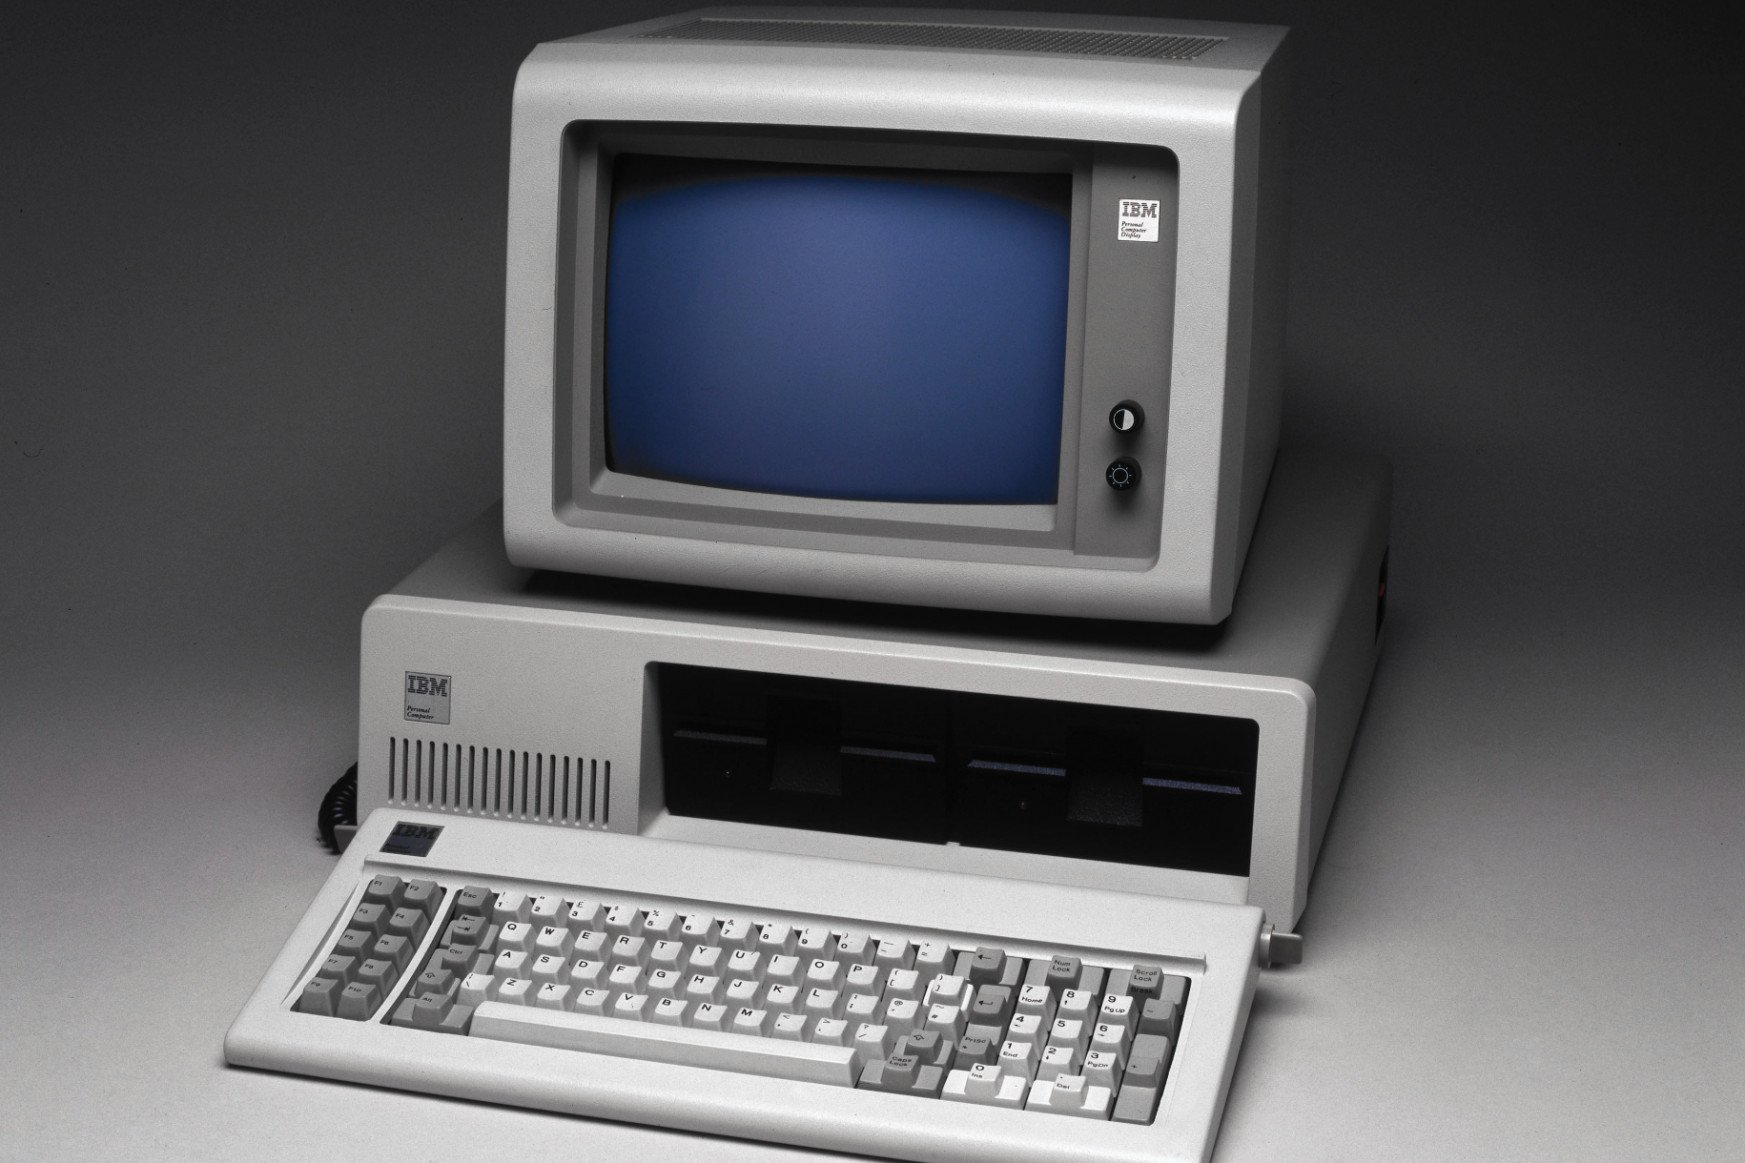 Negyven éve mutatta be első PC-jét az IBM, amit aztán itthon egy év alatt klónoztak